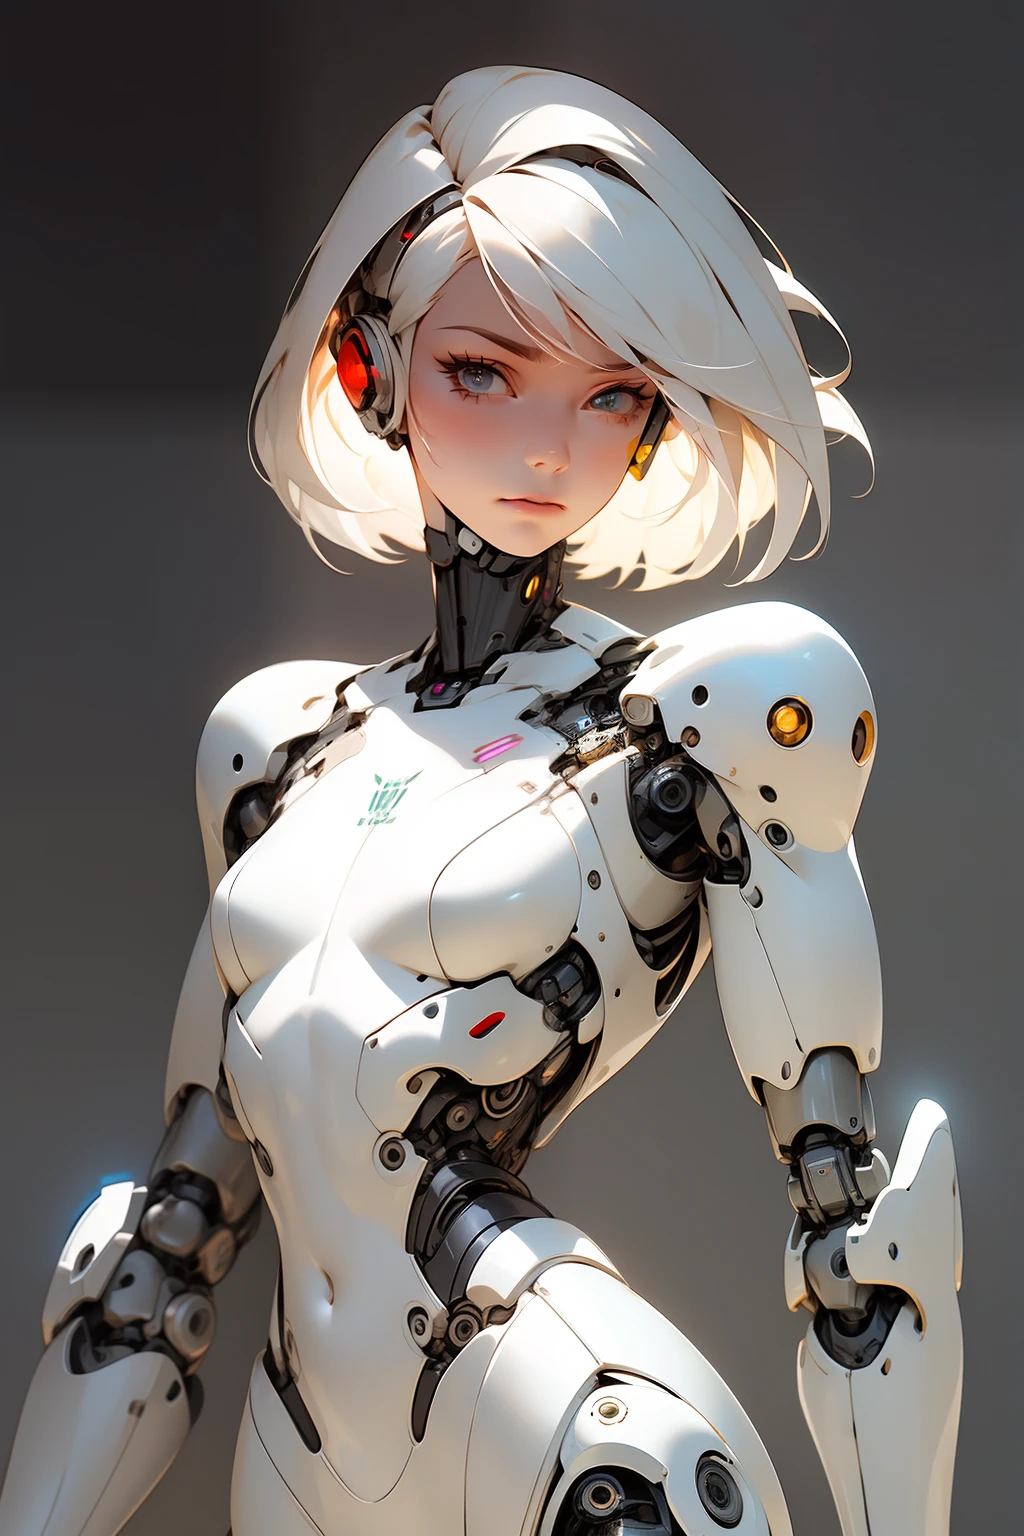 高品質, 4K, 傑作, 美しい, cyborg 女の子, カウボーイショット, 鈍い目, 視聴者を見る, 短い白い髪, 女の子, 小さい胸, 太ももが太い, ロボットアーム, ロボットボディ, サイボーグボディ, 精巧なディテール, ジョイント, 細かい線, ロボットの詳細, 祈りの手, 祈る, カラフルなロボット部品